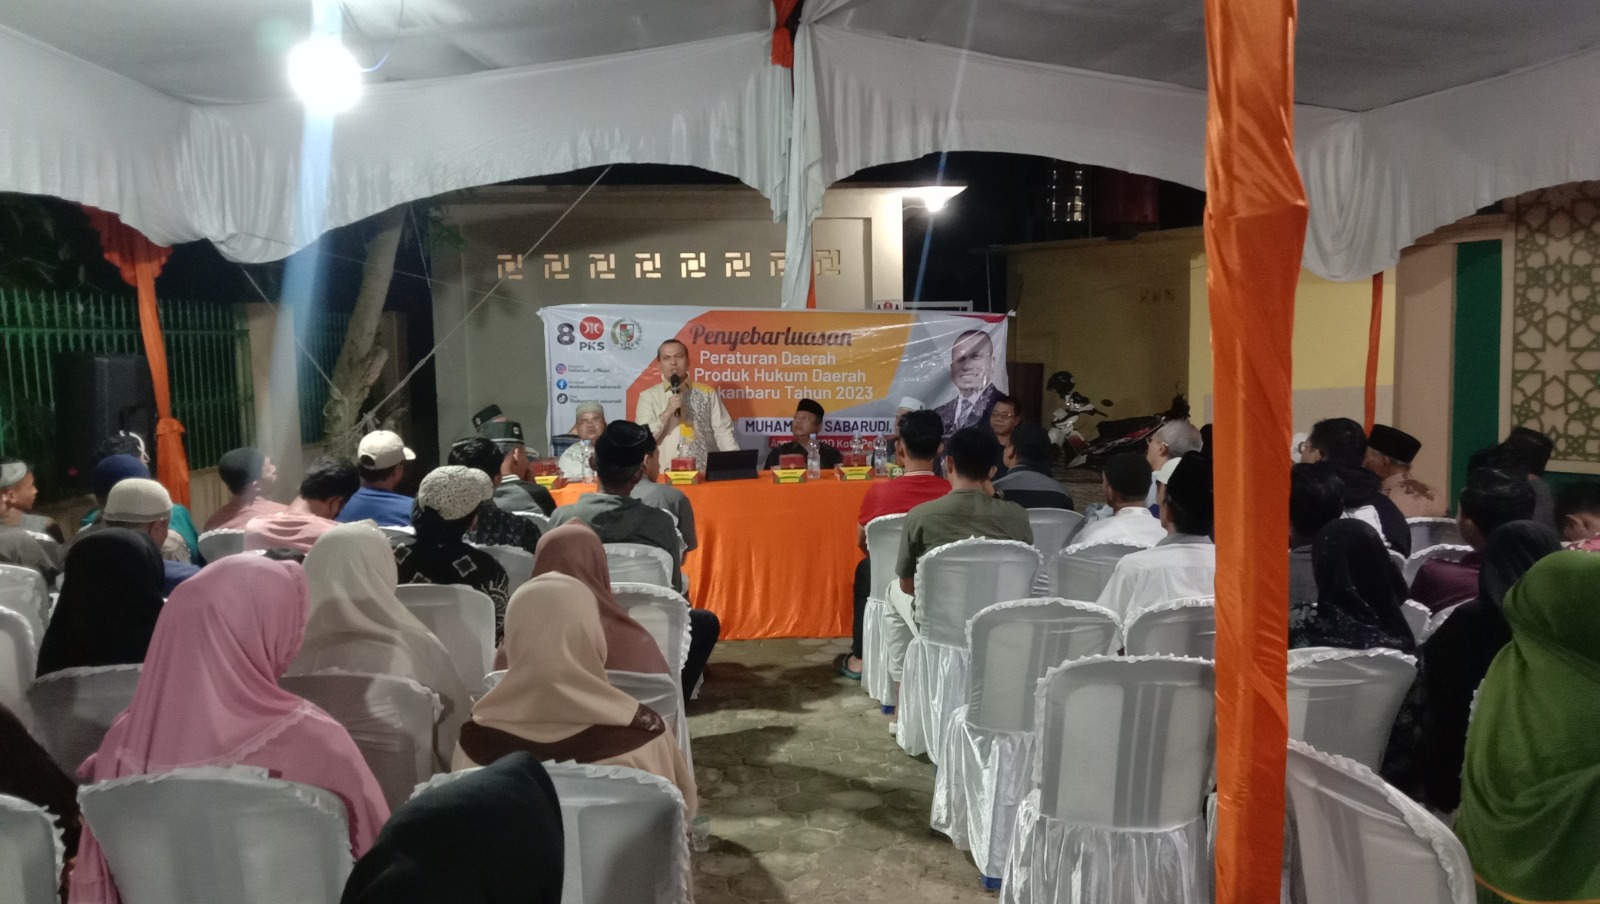 Ketua DPRD Kota Pekanbaru Muhammad Sabarudi saat menyampaikan penyebarluasan perda